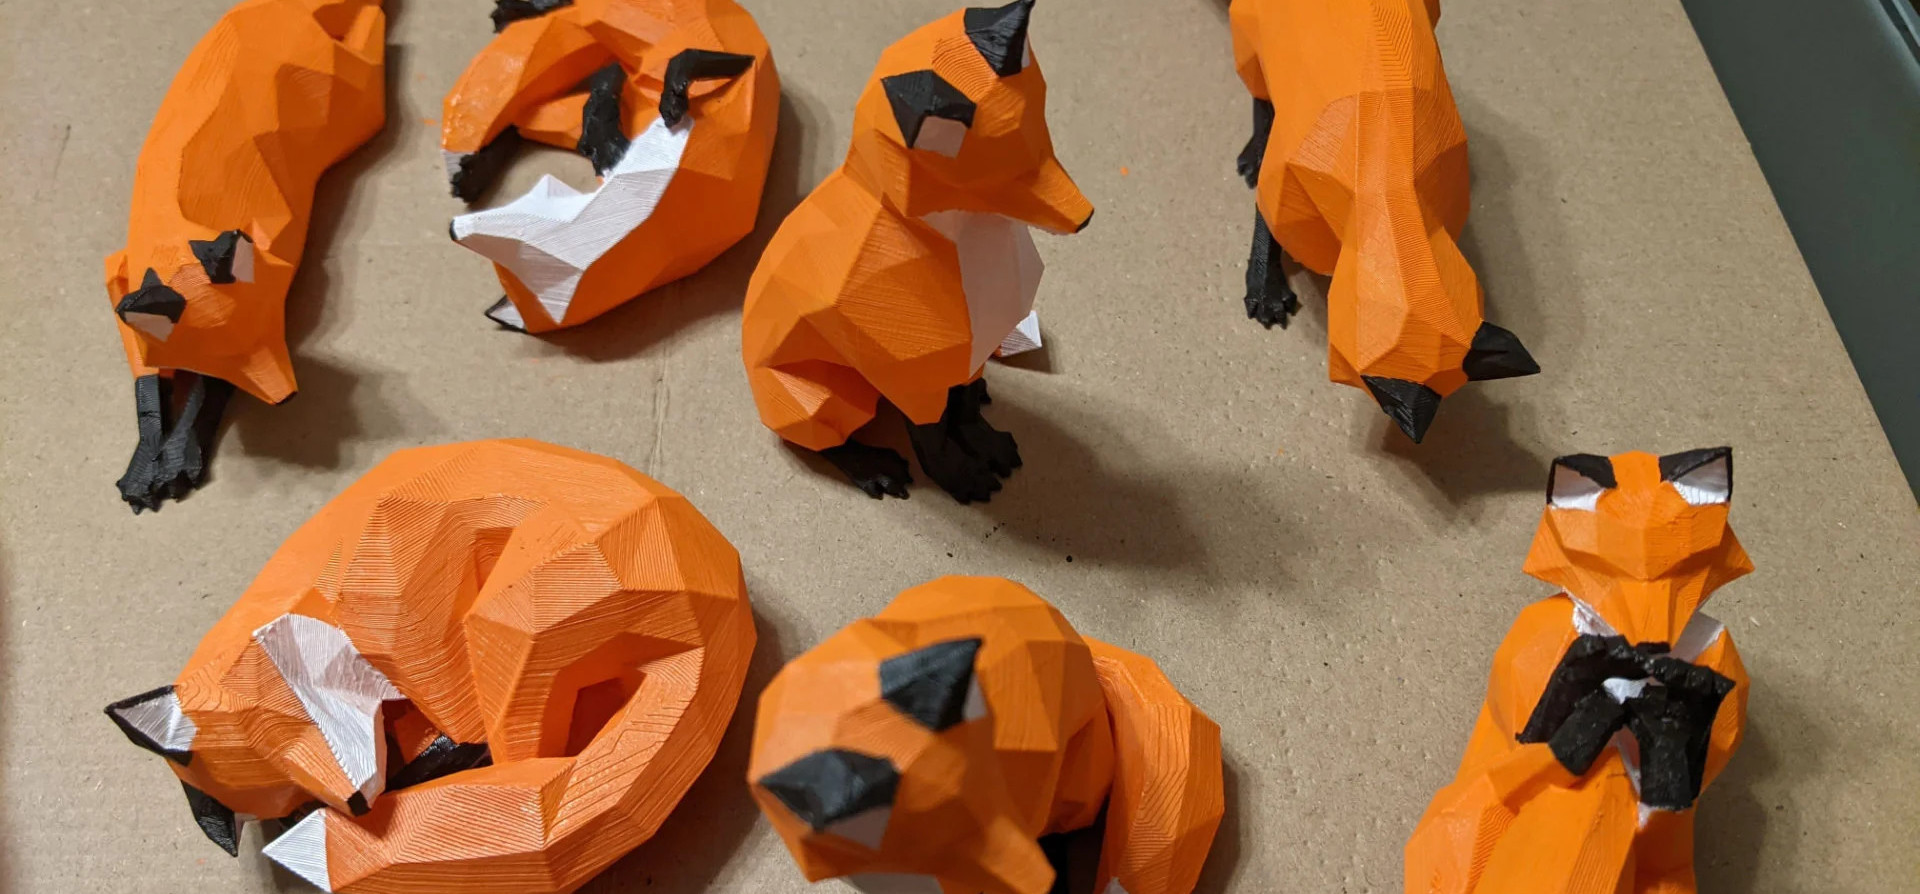 Low poly foxes STL 3D print files